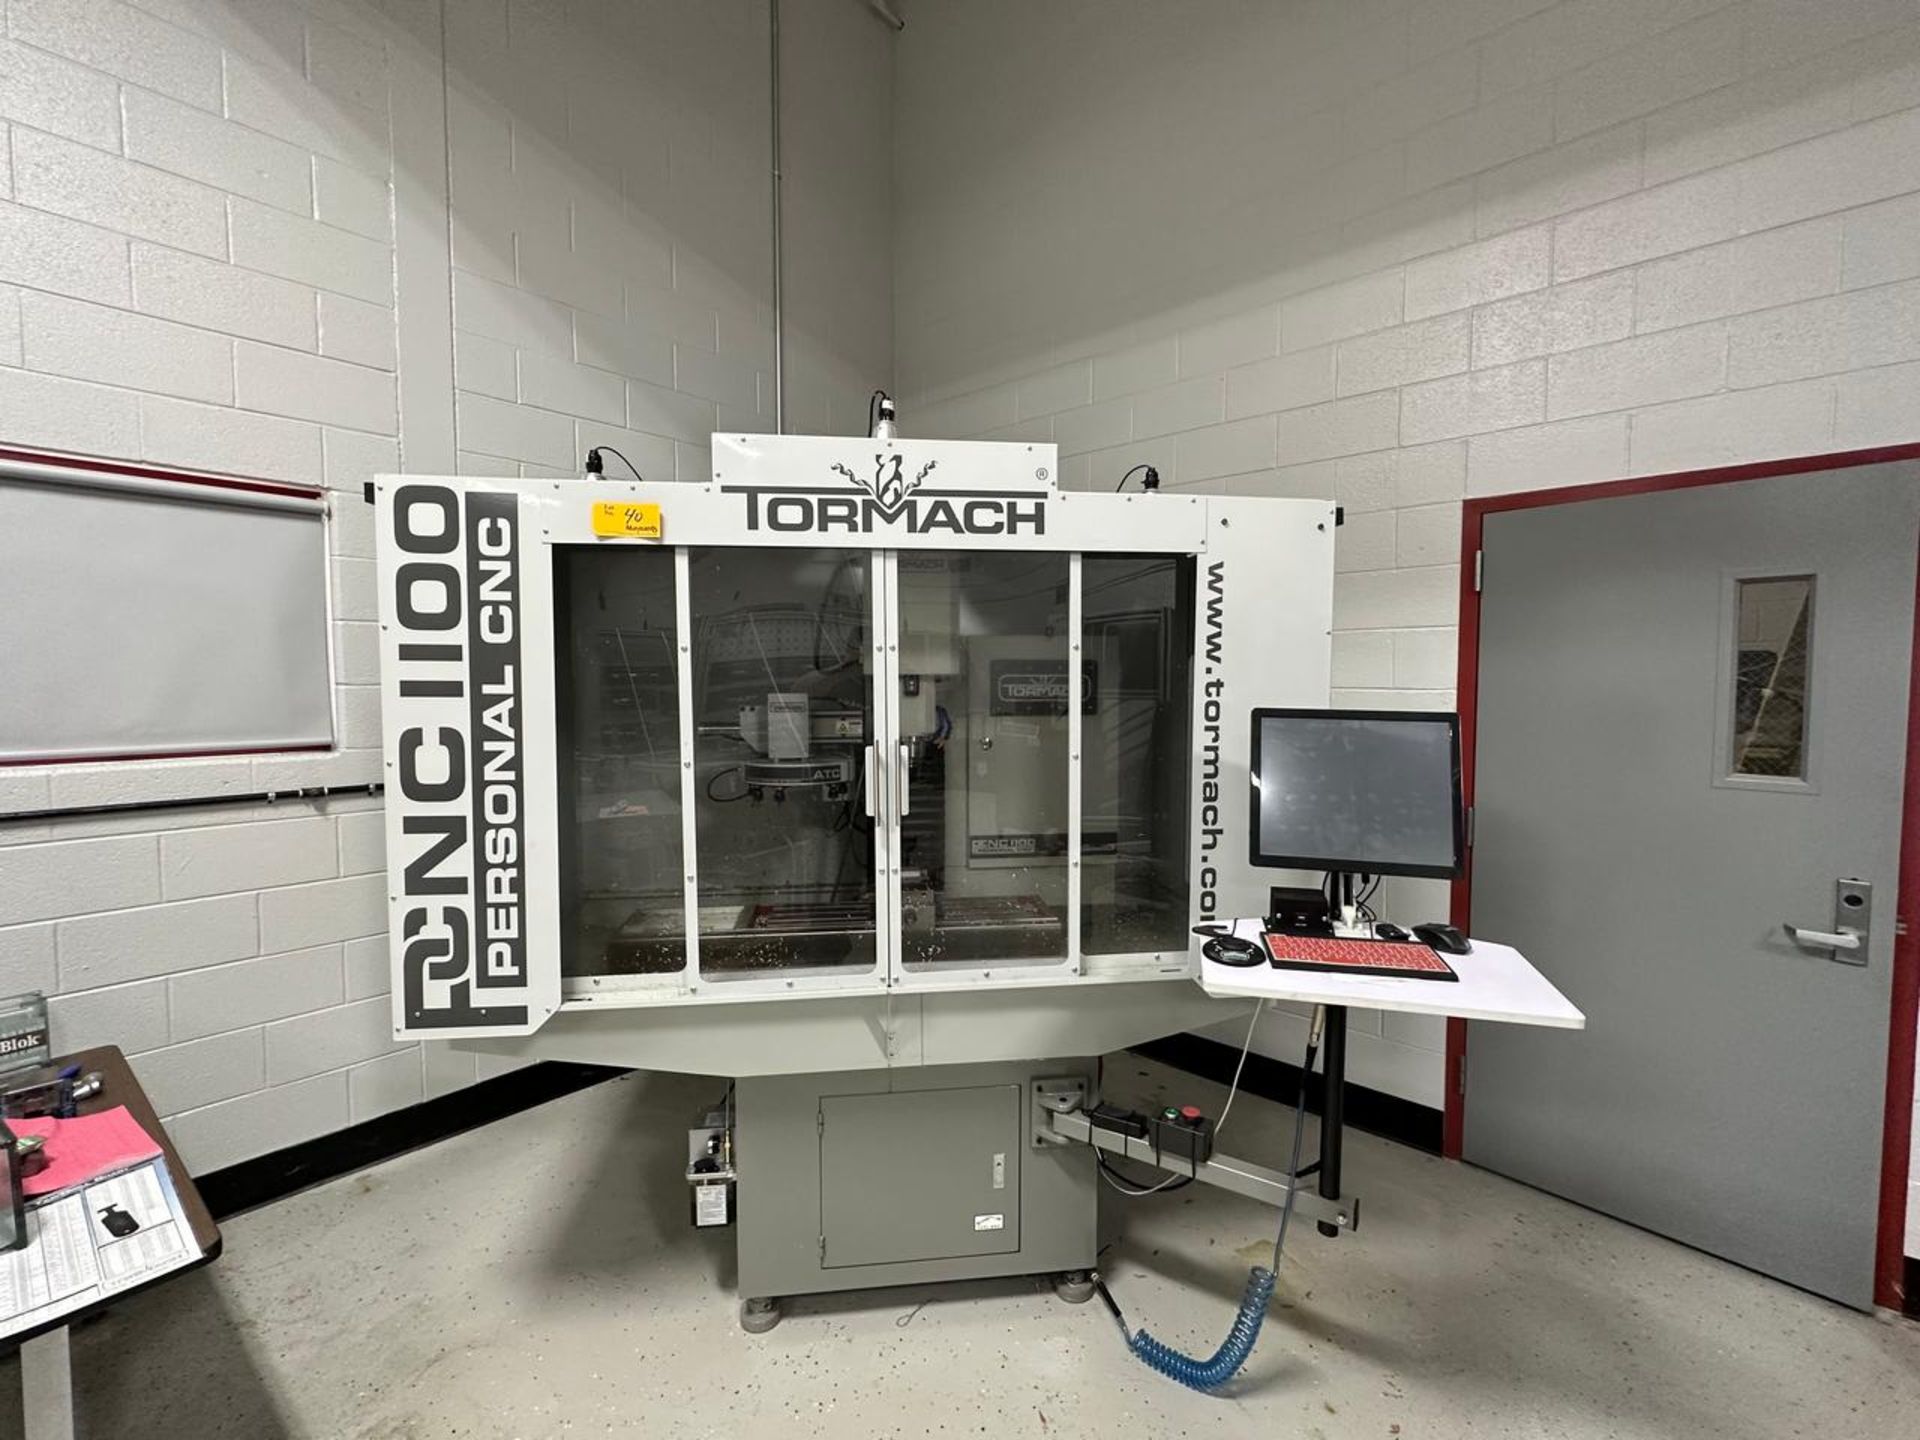 2016 Tormach PNC 1100 CNC Milling Machine